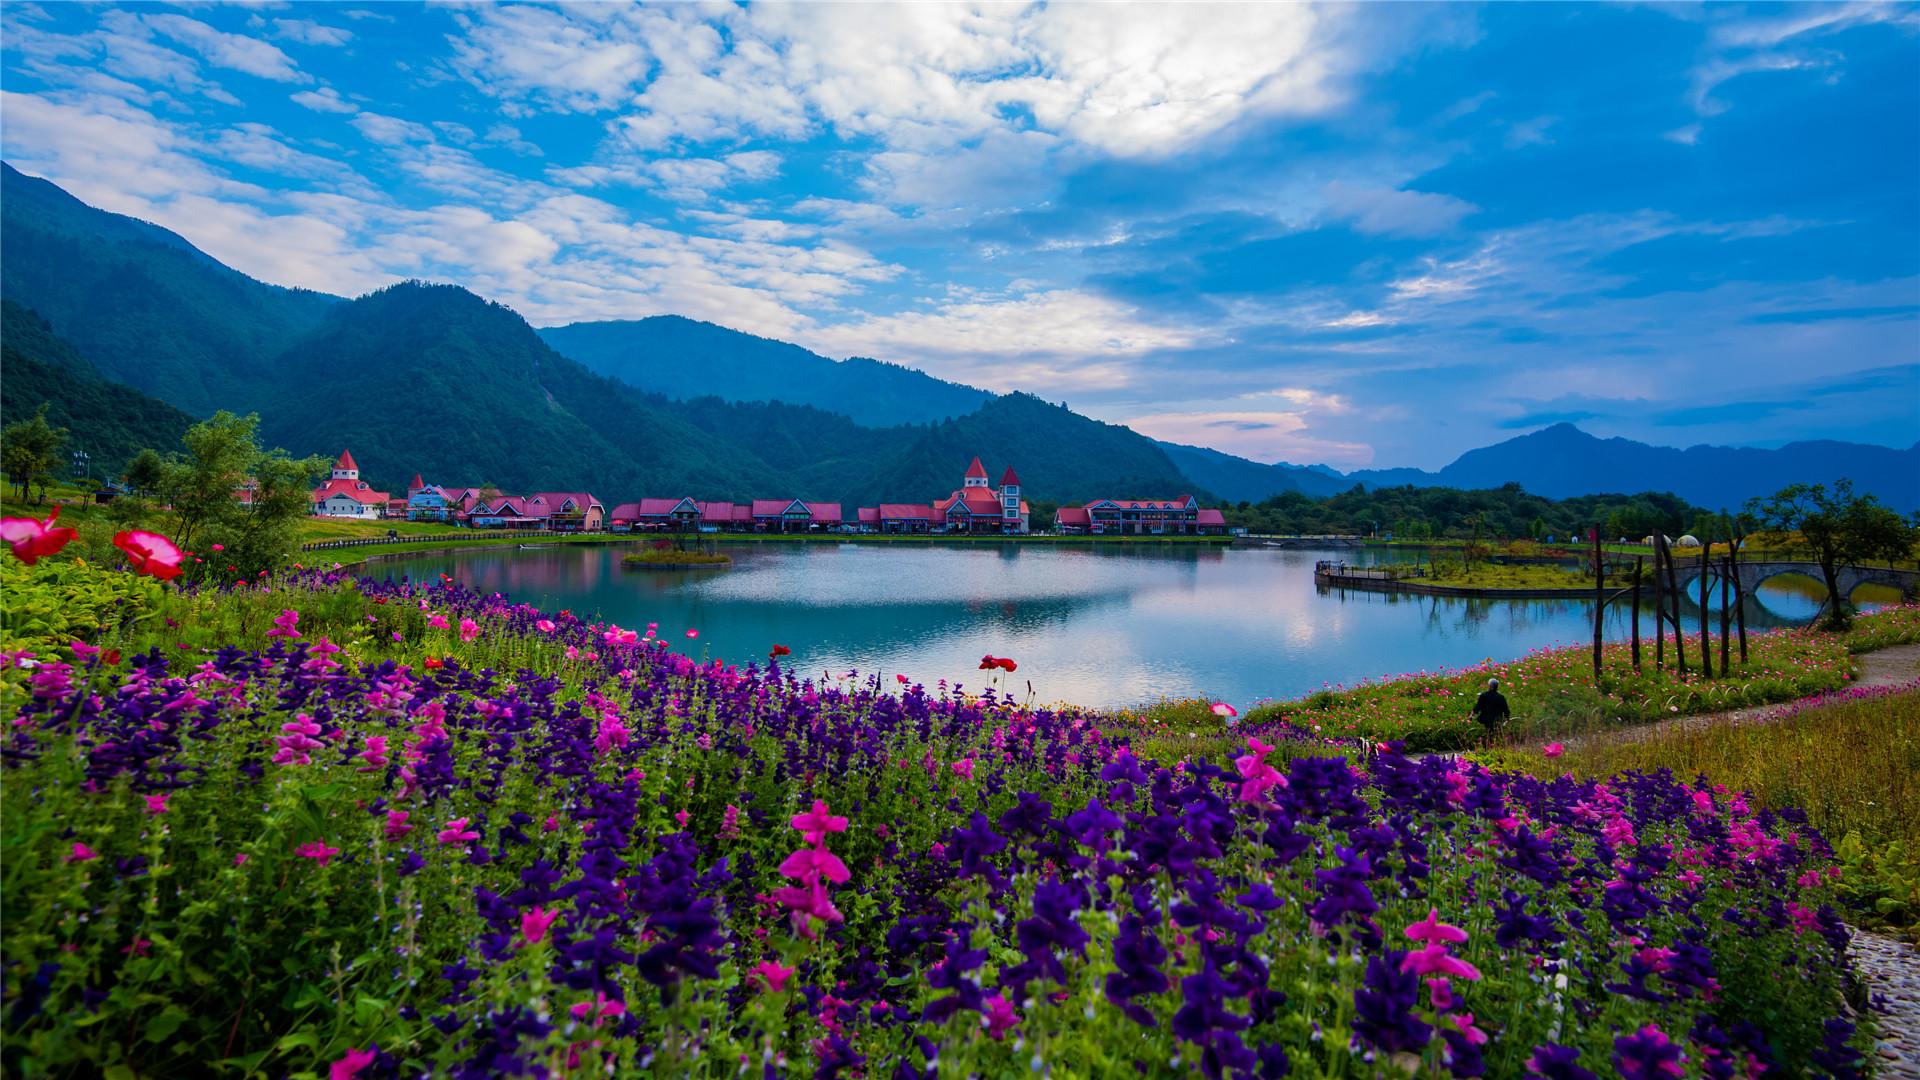 Hình ảnh đẹp thiên nhiên Việt Nam chất lượng cao Full HD 4K sắc nét